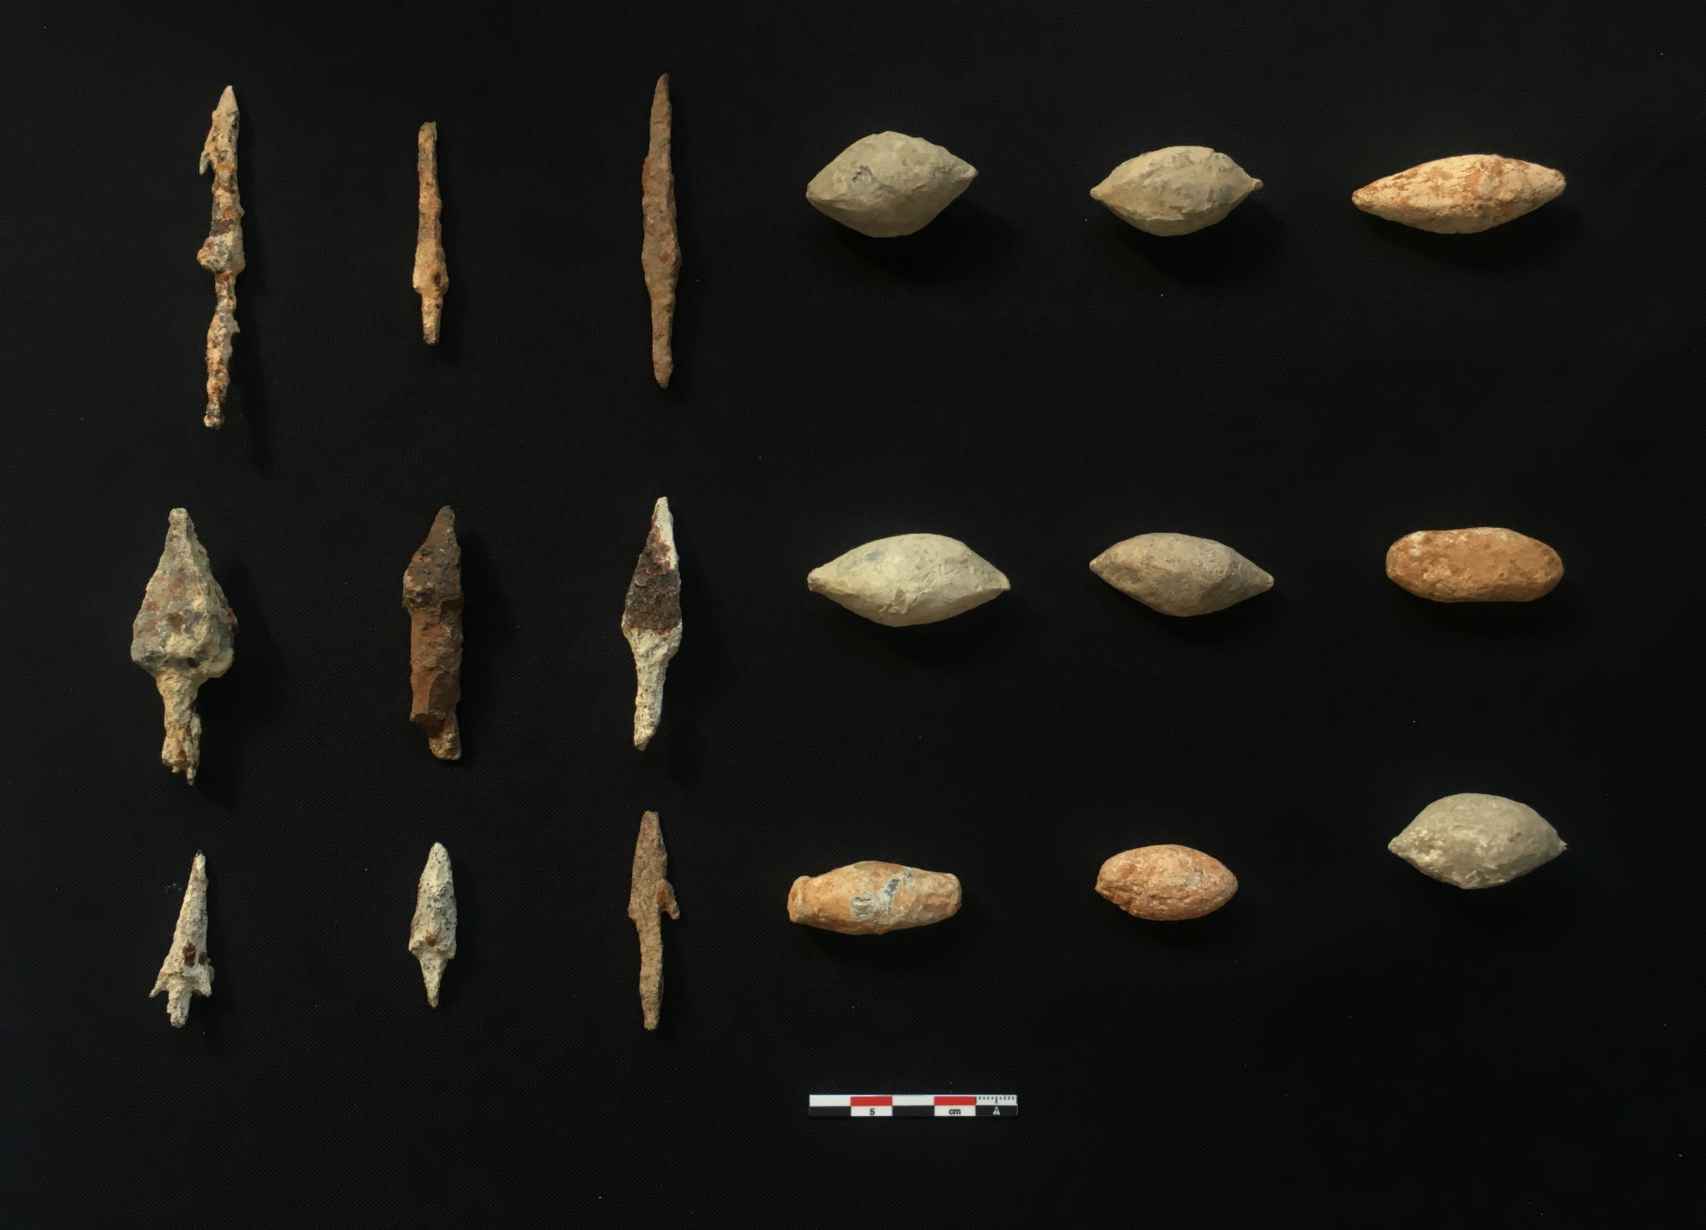 Glandes de honda y puntas de flecha romanas desenterradas en Montemayor.